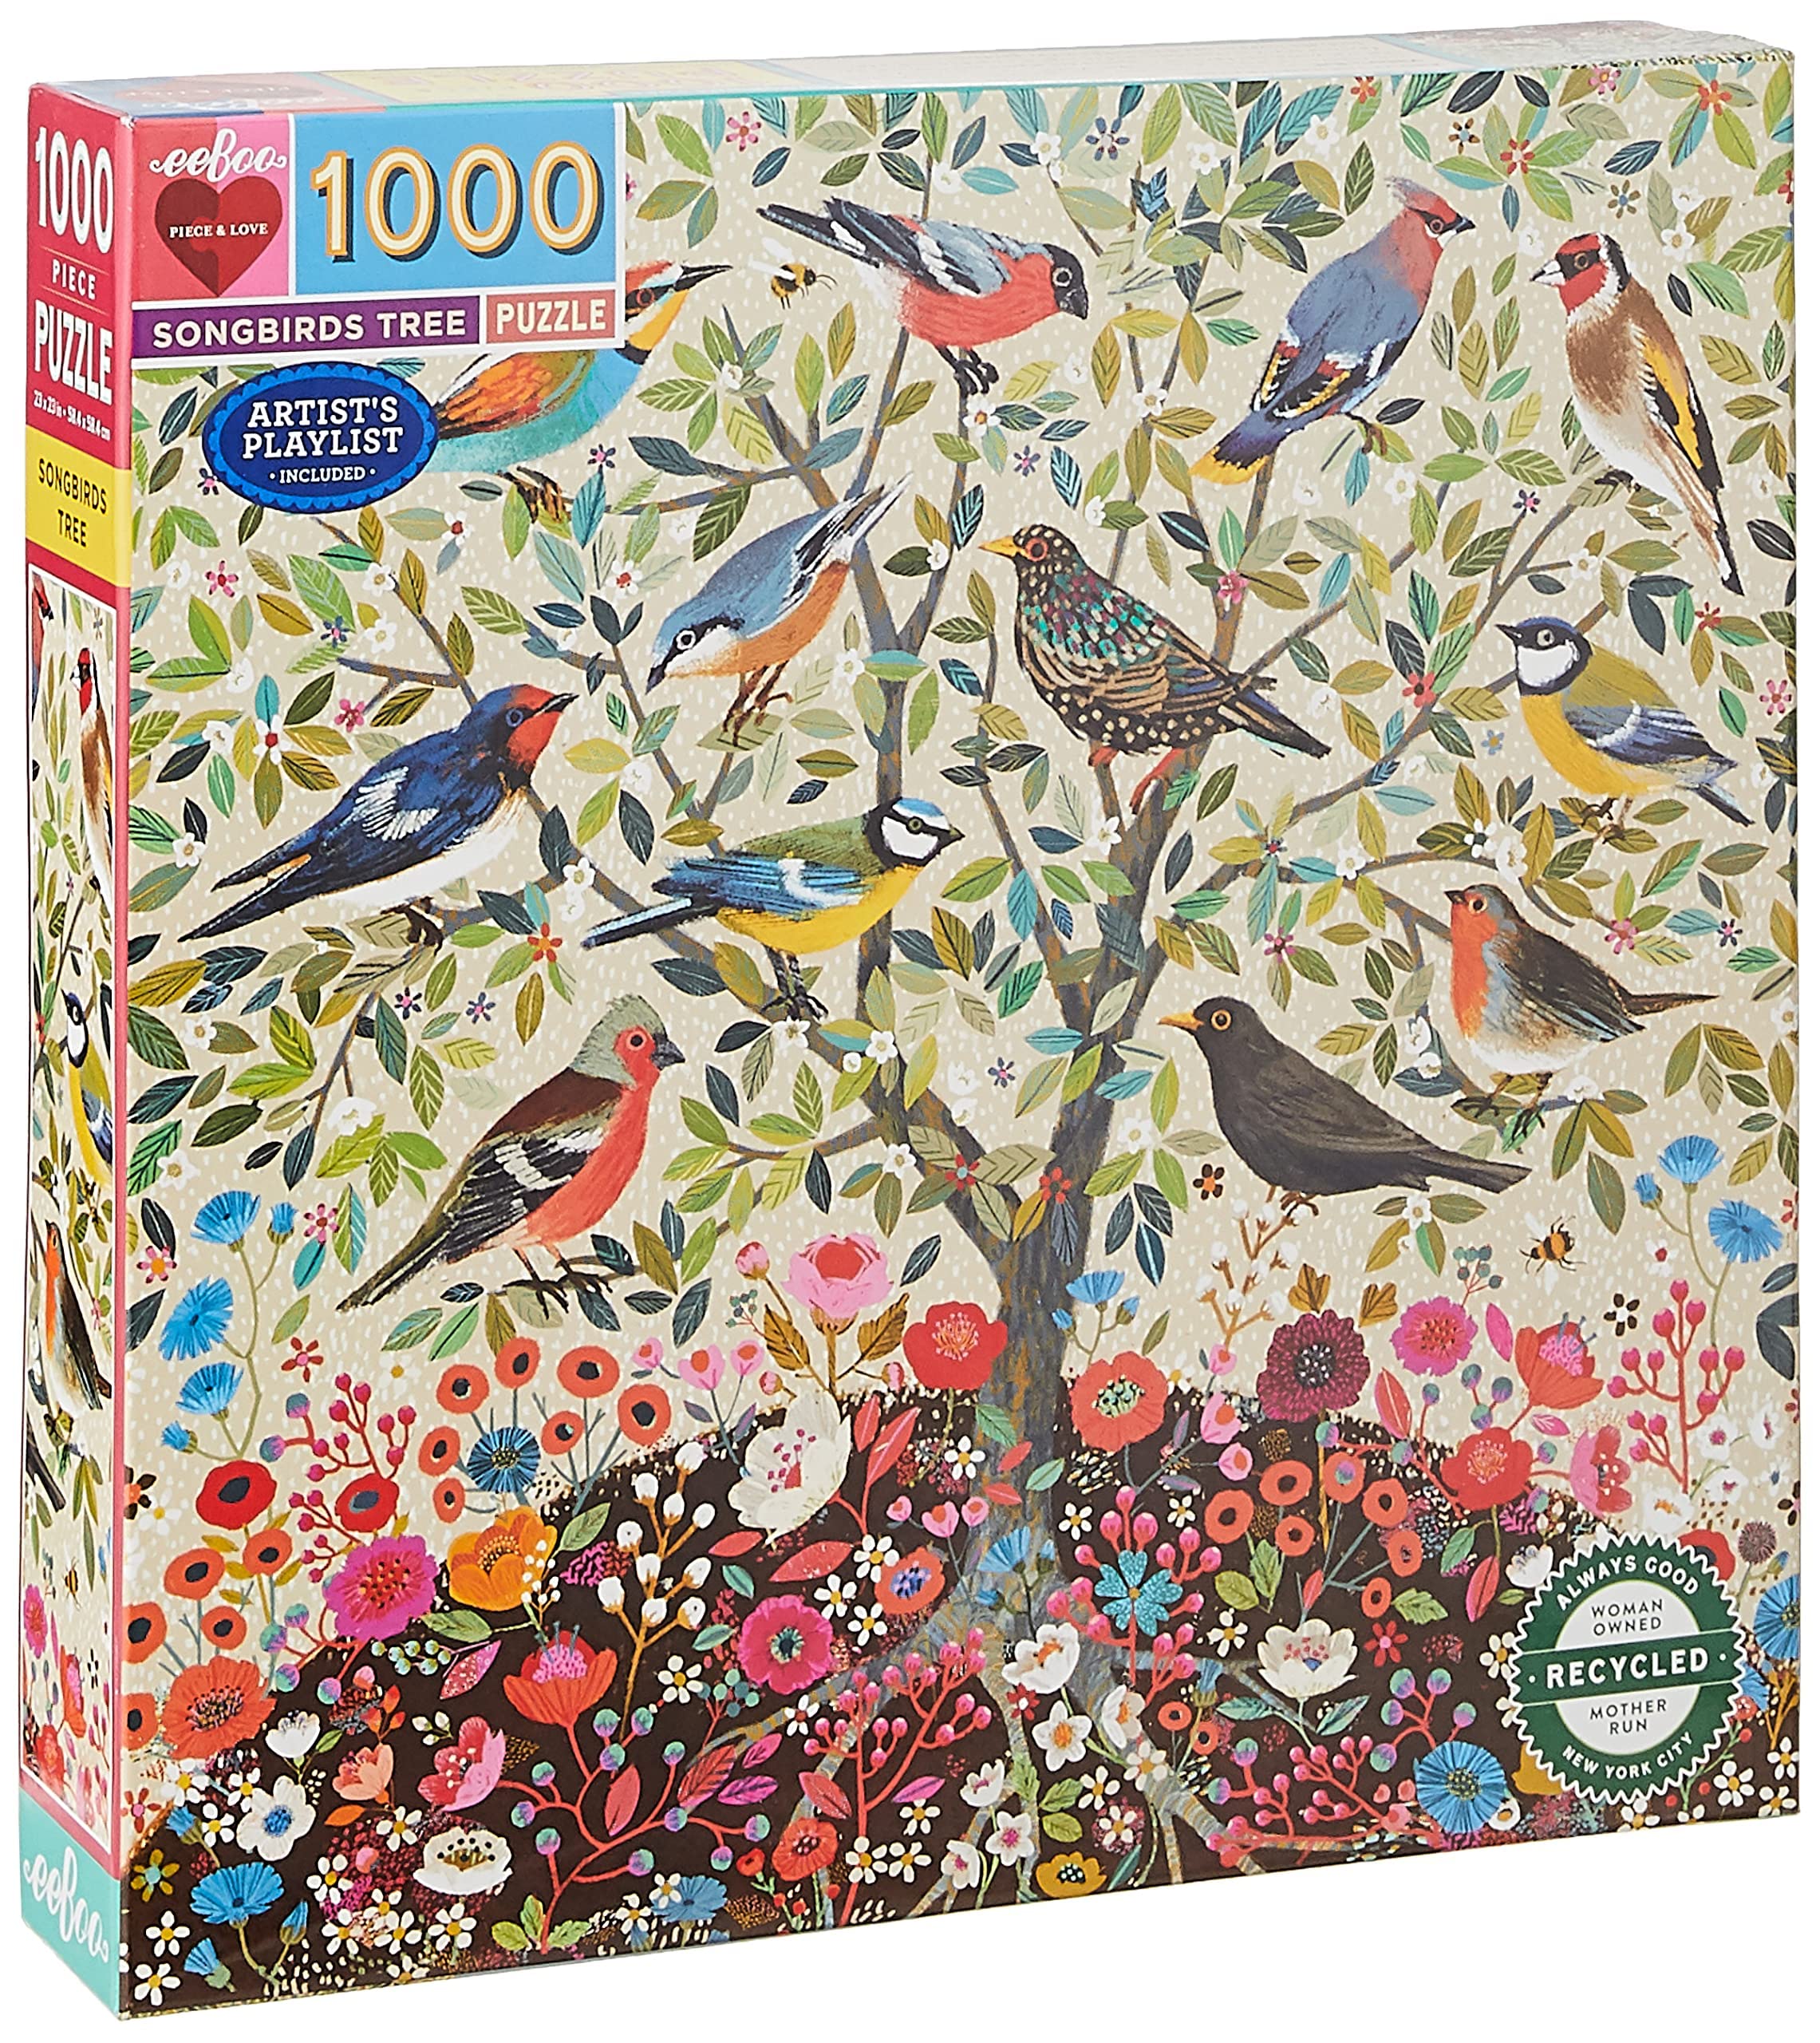 pas cher eeBoo- Songbirds Tree Puzzle 1000 pièces Carton recyclé pour Adulte, PZTSBD, Multicolore ueQb5aSb5 véritable contre